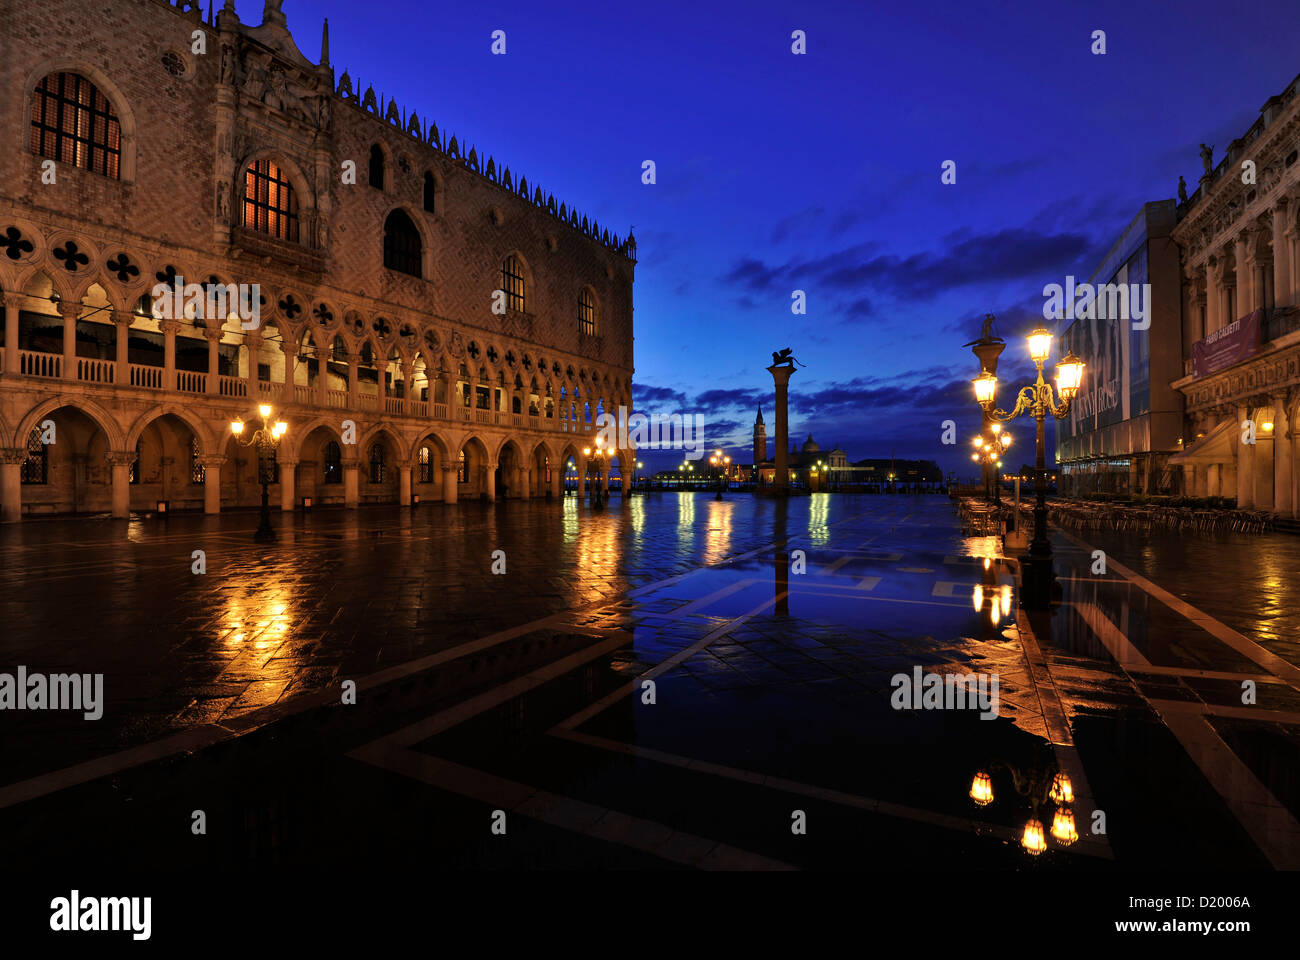 The Lion of St. Marcus, Piazzetta, San Giorgio Maggiore, Piazza San Marco, St Mark's Square, Venice, Italy Stock Photo